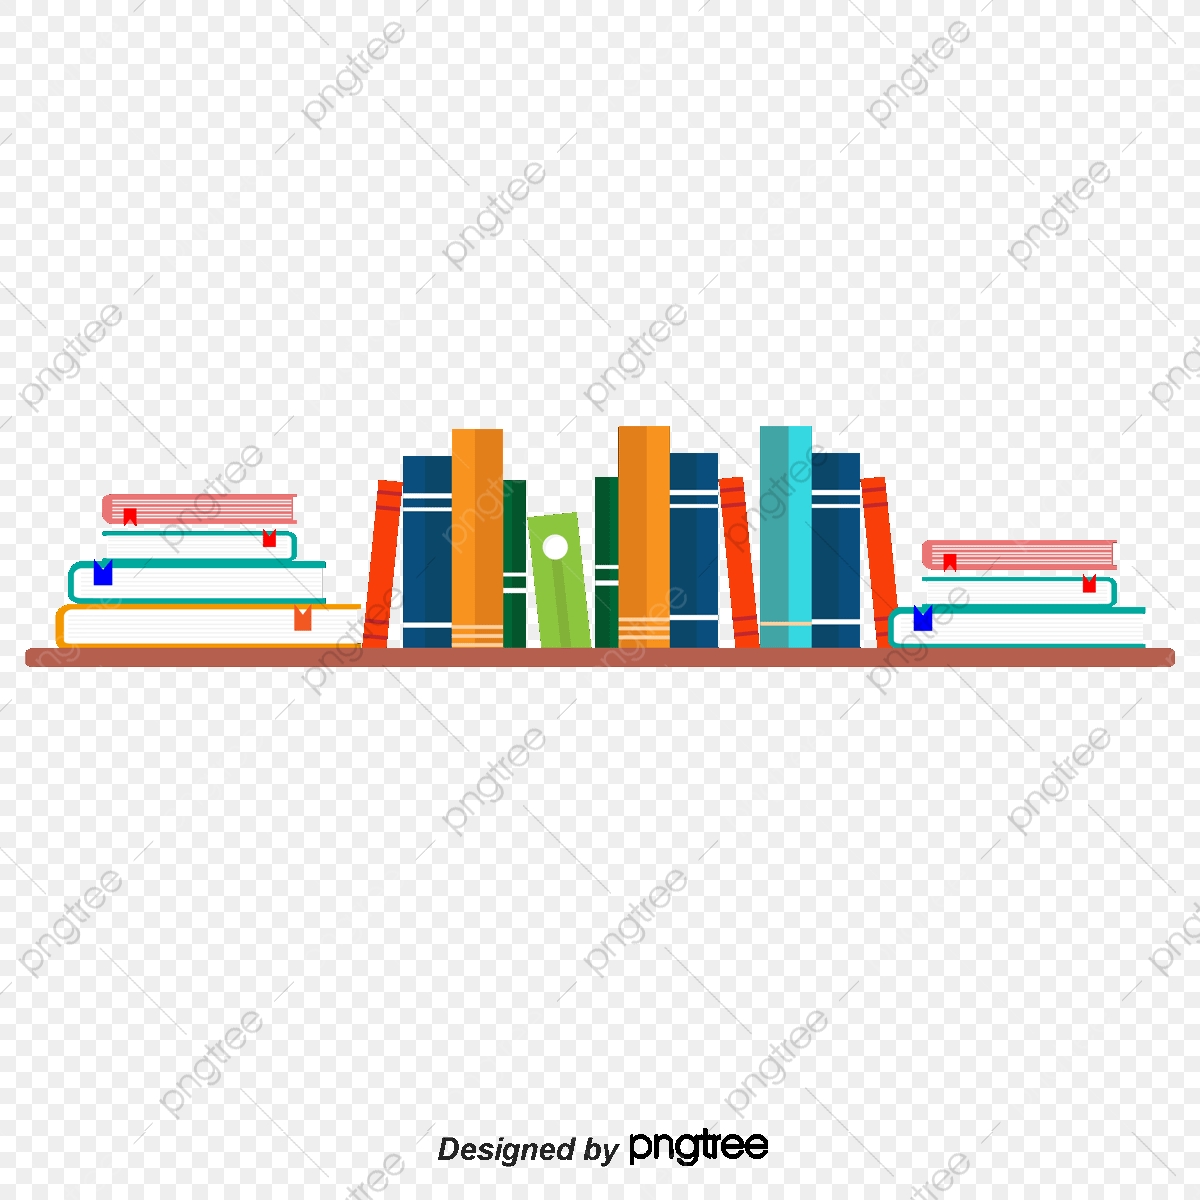 Bookshelf clipart arranged. Shelves book arrangement png